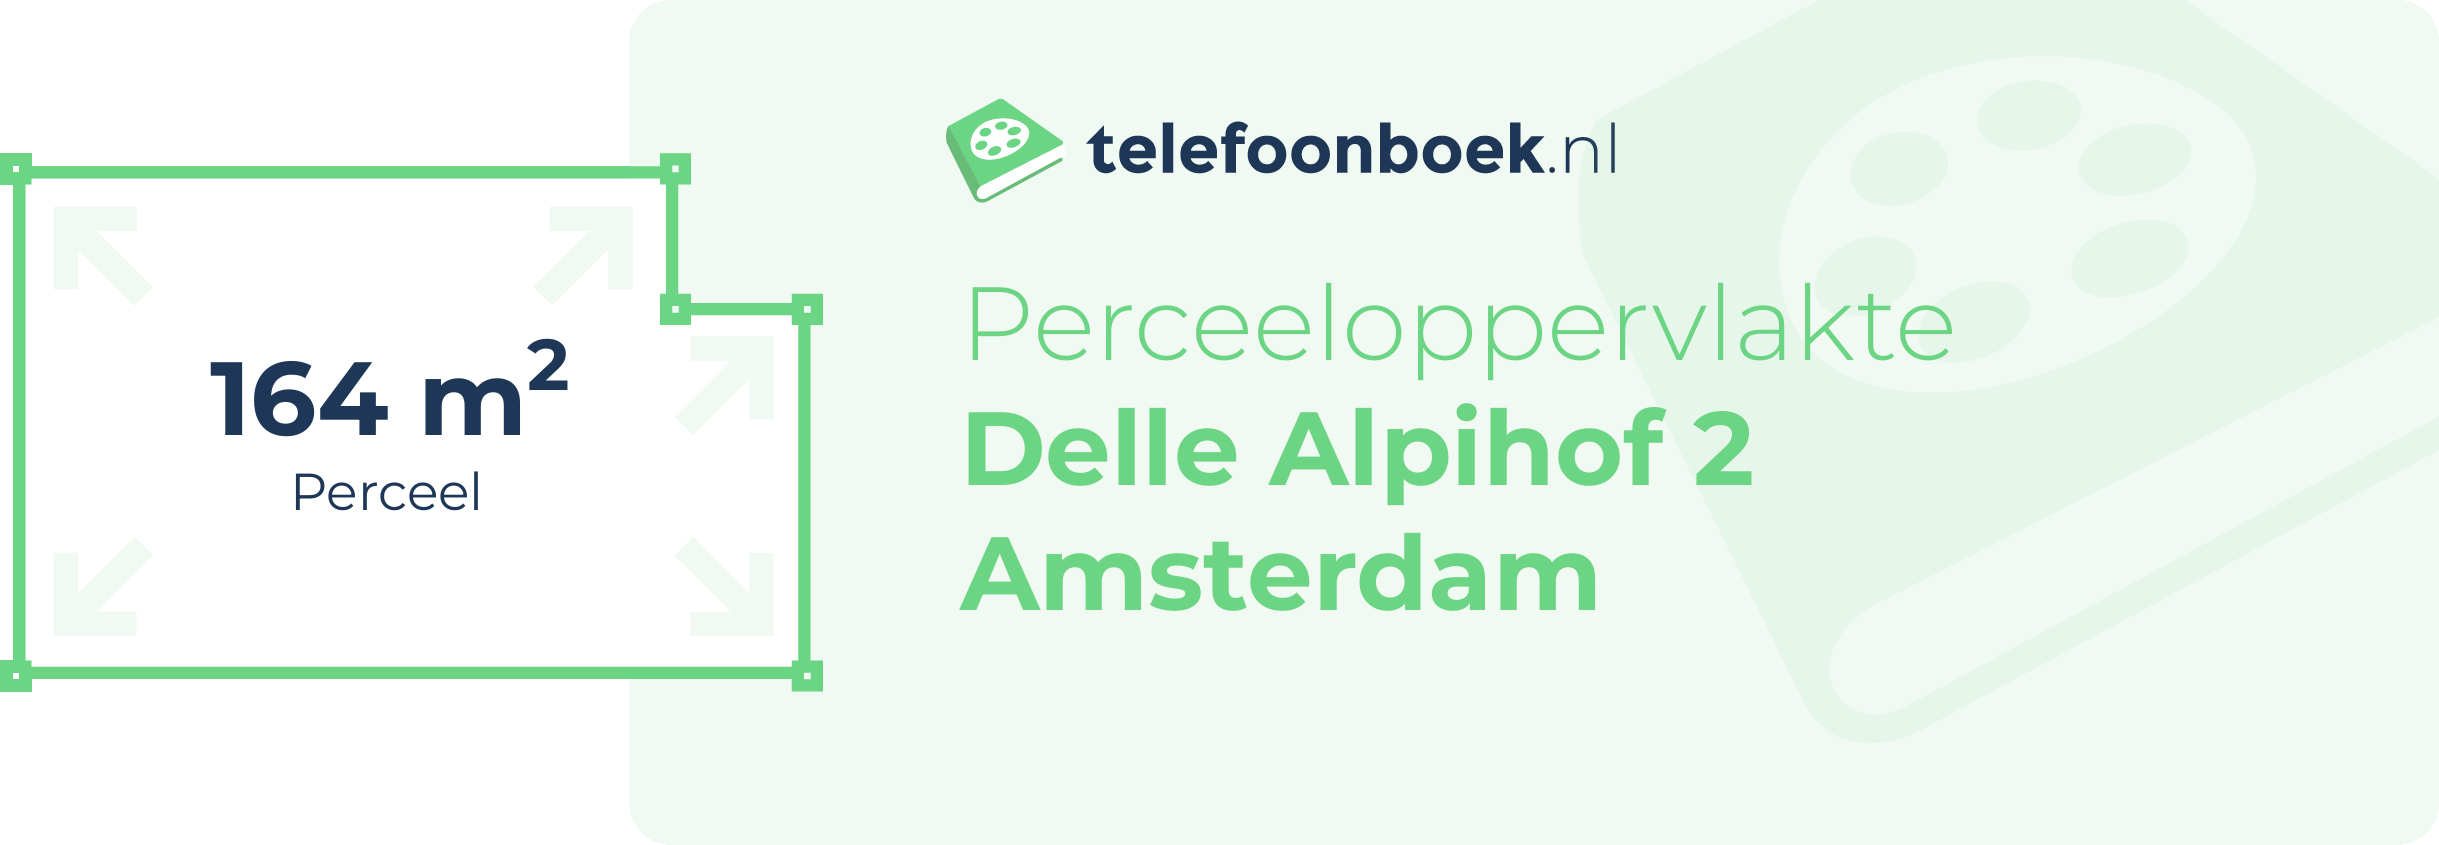 Perceeloppervlakte Delle Alpihof 2 Amsterdam